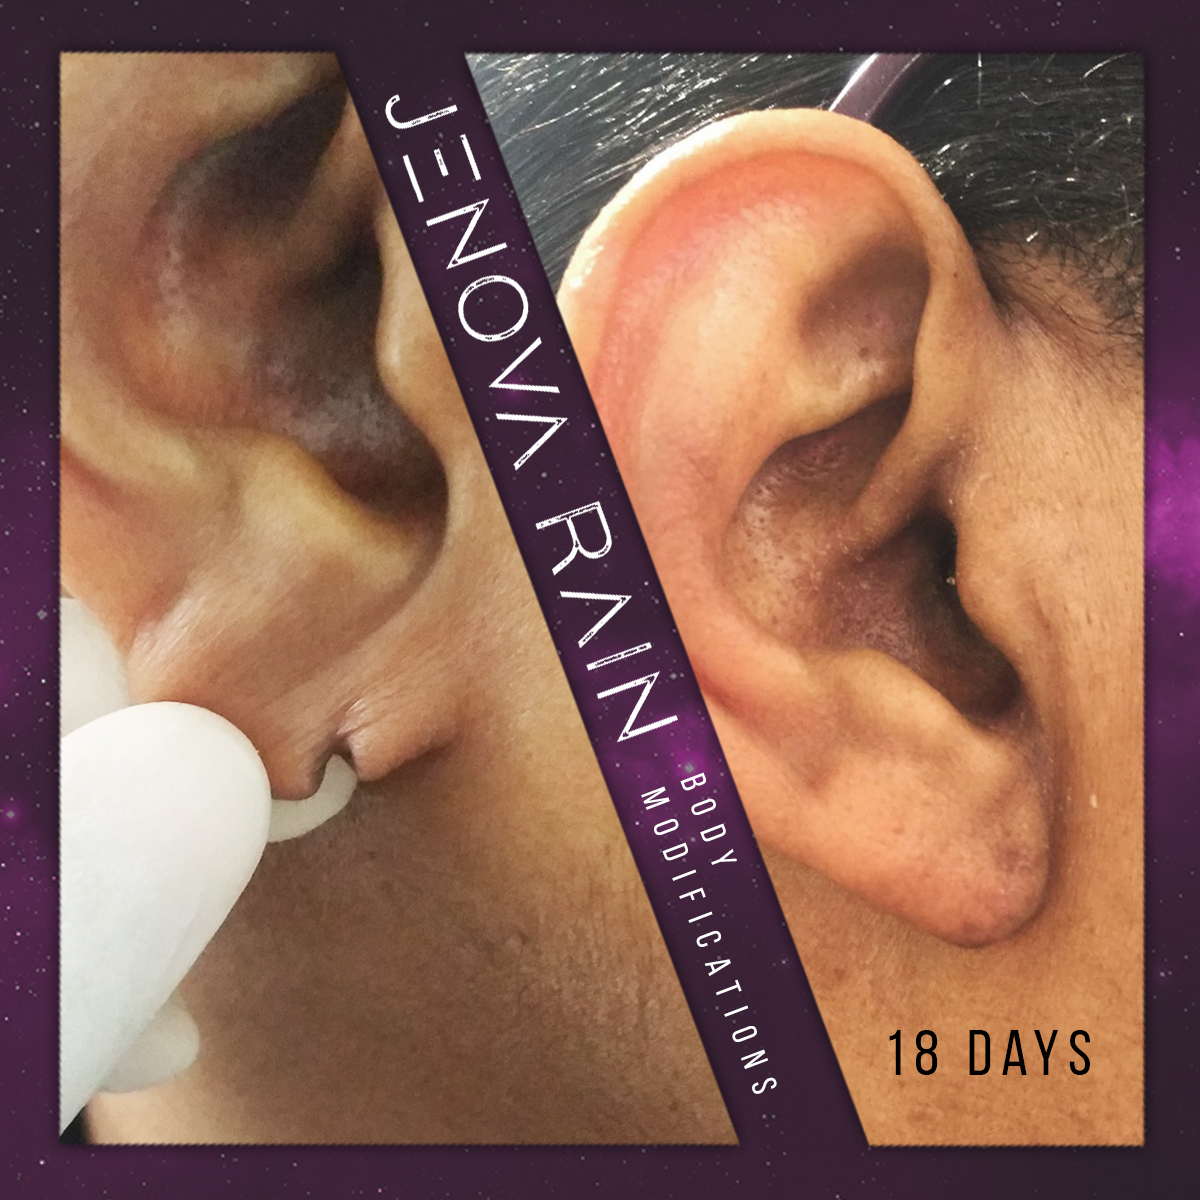 Split Ear Lobe Repair UK by Jenova Rain